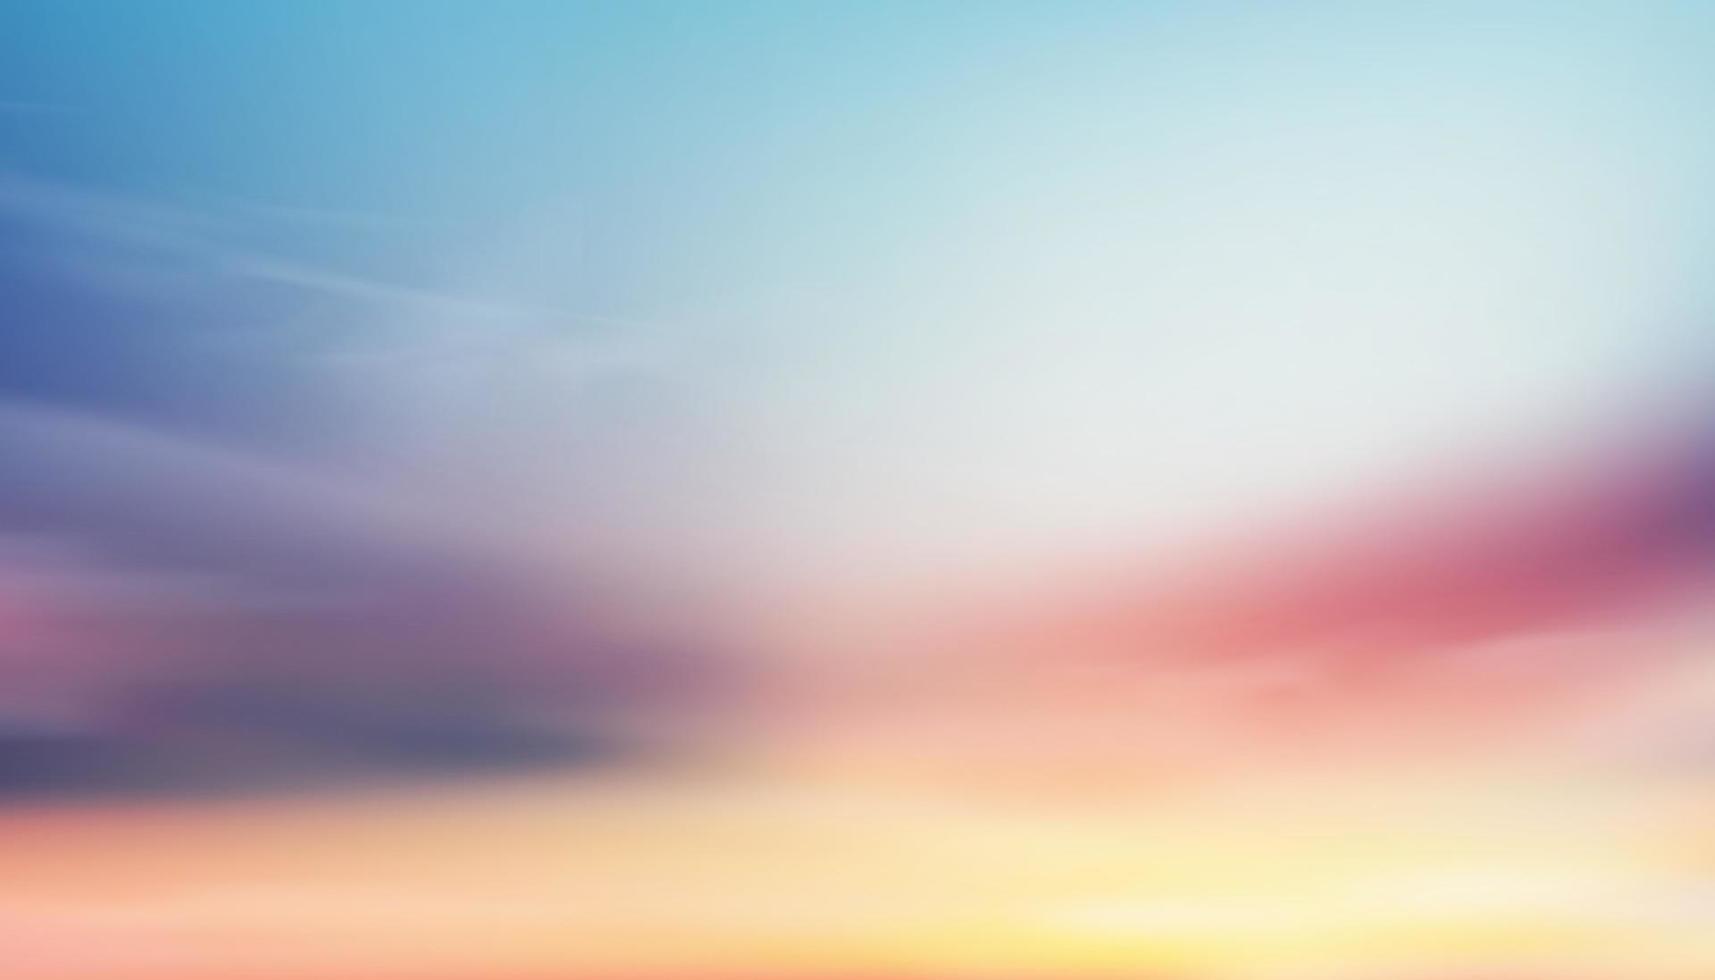 Bunter bewölkter Himmel mit flauschigen Wolken mit Pastelltönen in Blau, Rosa und Orange am Morgen, magischer Sonnenuntergangshimmel der Fantasie im Frühling oder Sommer, süßer Hintergrund der Vektorillustration für Banner mit vier Jahreszeiten vektor